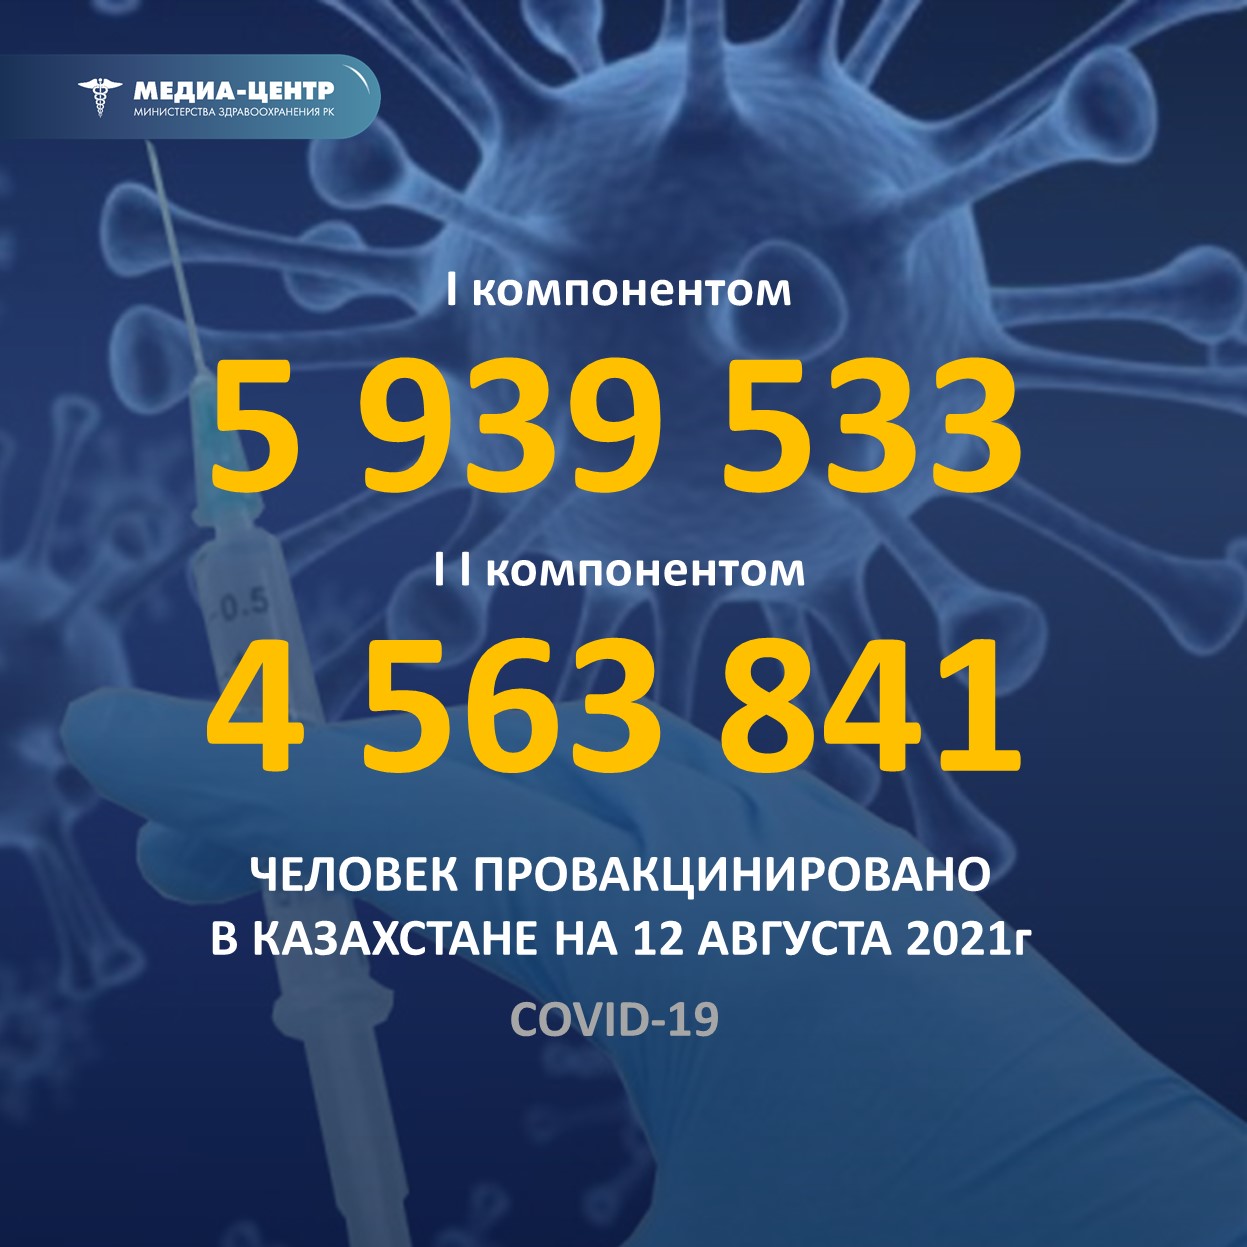 I компонентом 5 939 533 человек провакцинировано в Казахстане на 12 августа 2021 г, II компонентом 4 563 841 человек.